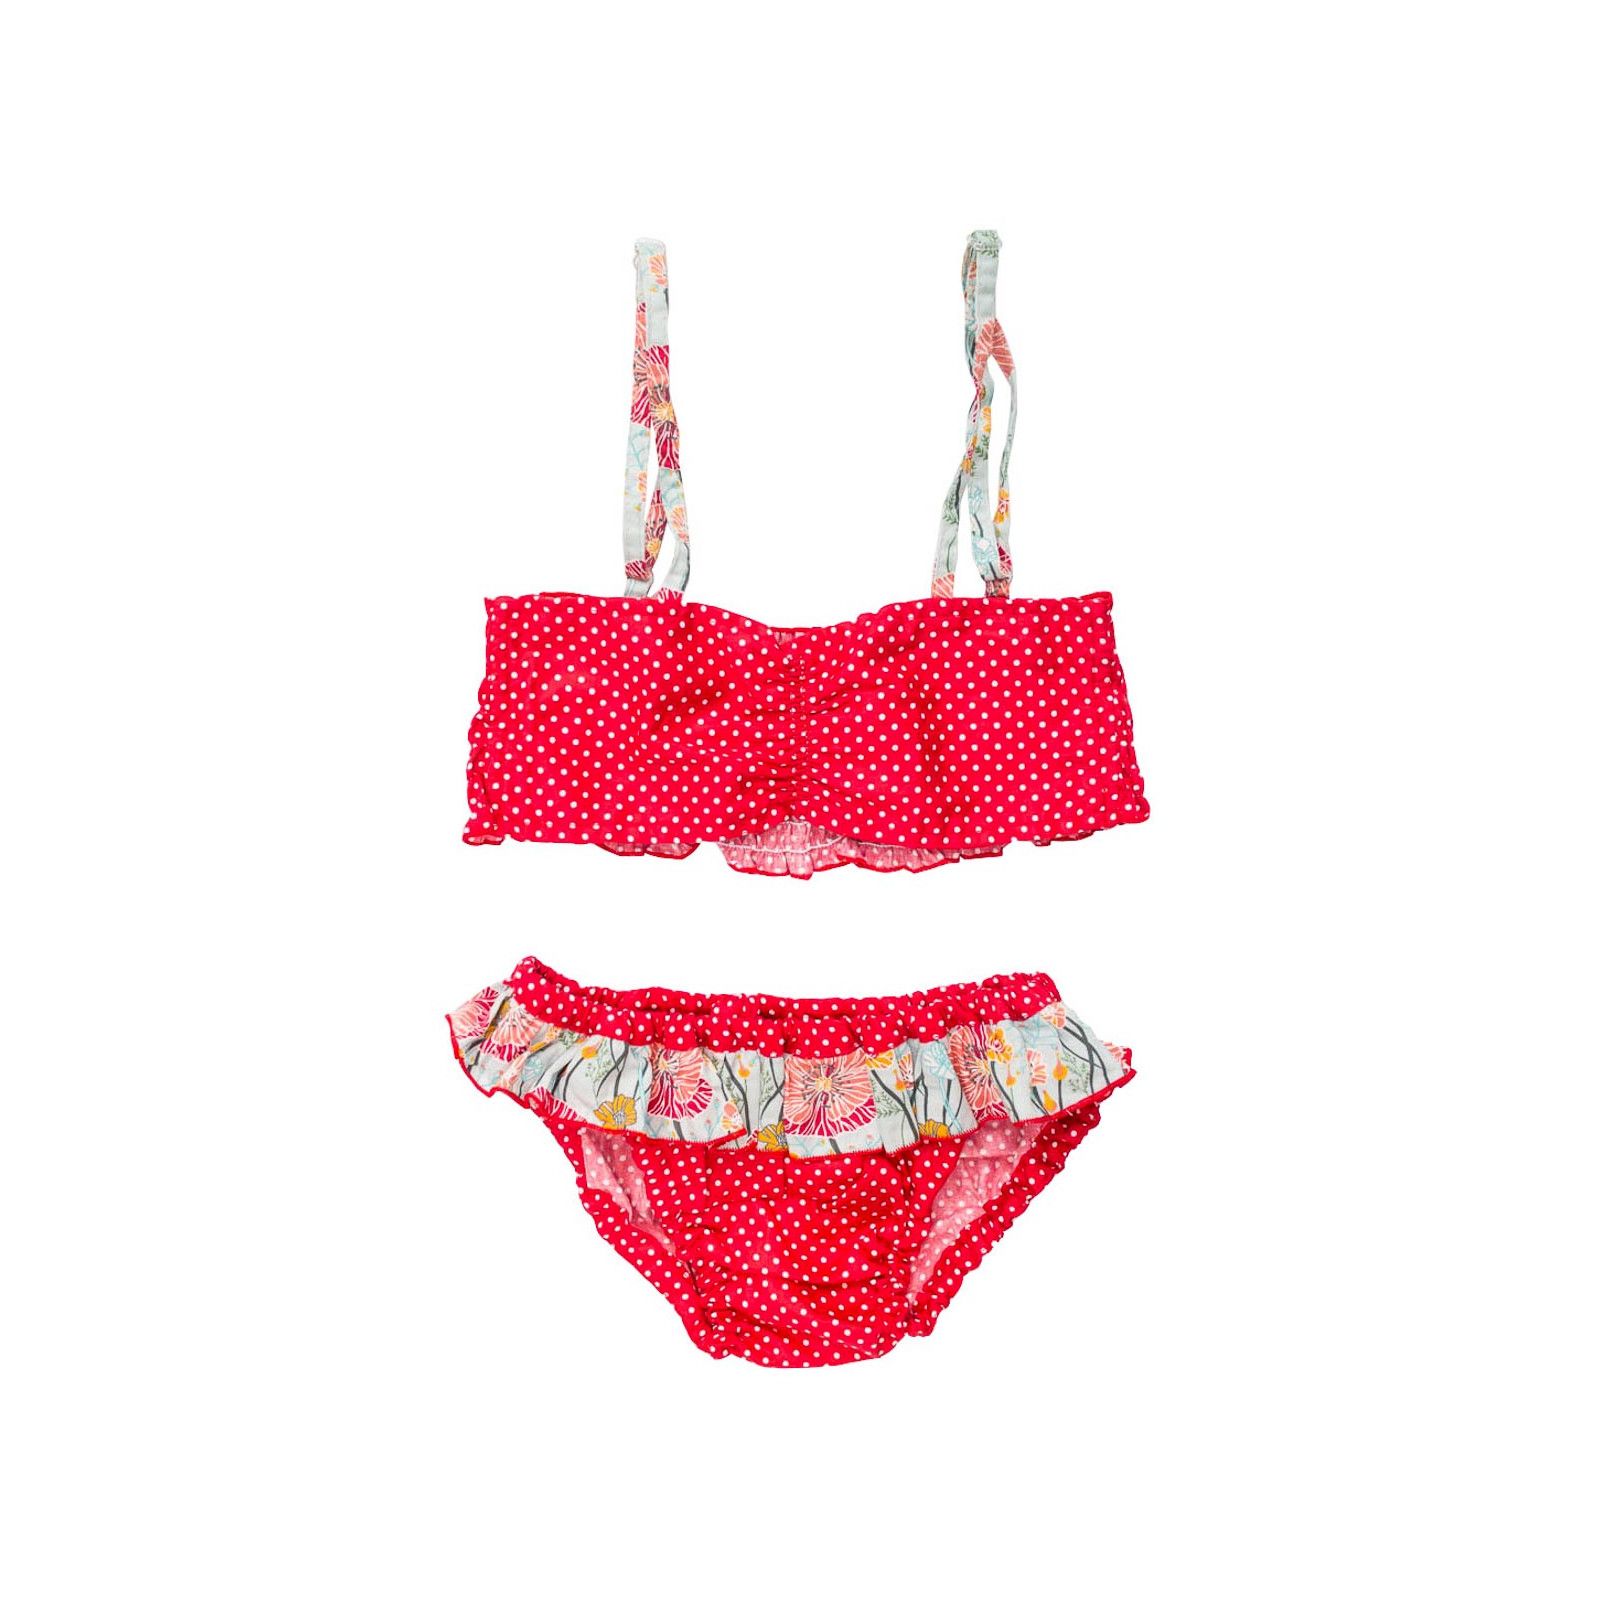 Bikini maillot de bain coton fille 4-10 ans rouge à pois et coquelicot